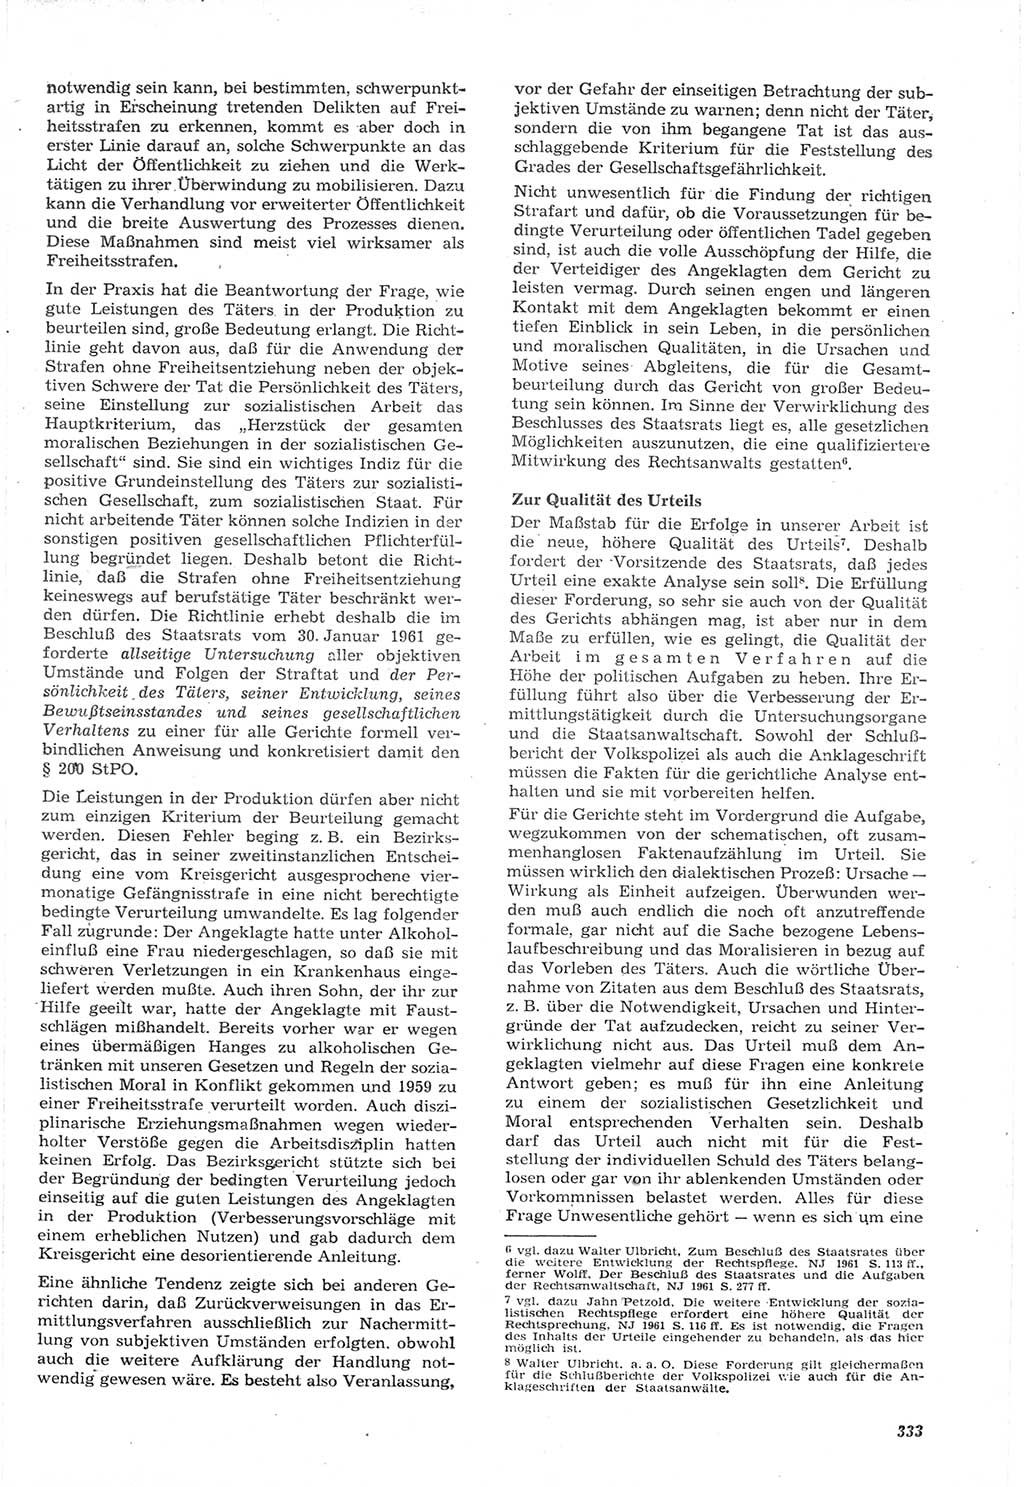 Neue Justiz (NJ), Zeitschrift für Recht und Rechtswissenschaft [Deutsche Demokratische Republik (DDR)], 15. Jahrgang 1961, Seite 333 (NJ DDR 1961, S. 333)